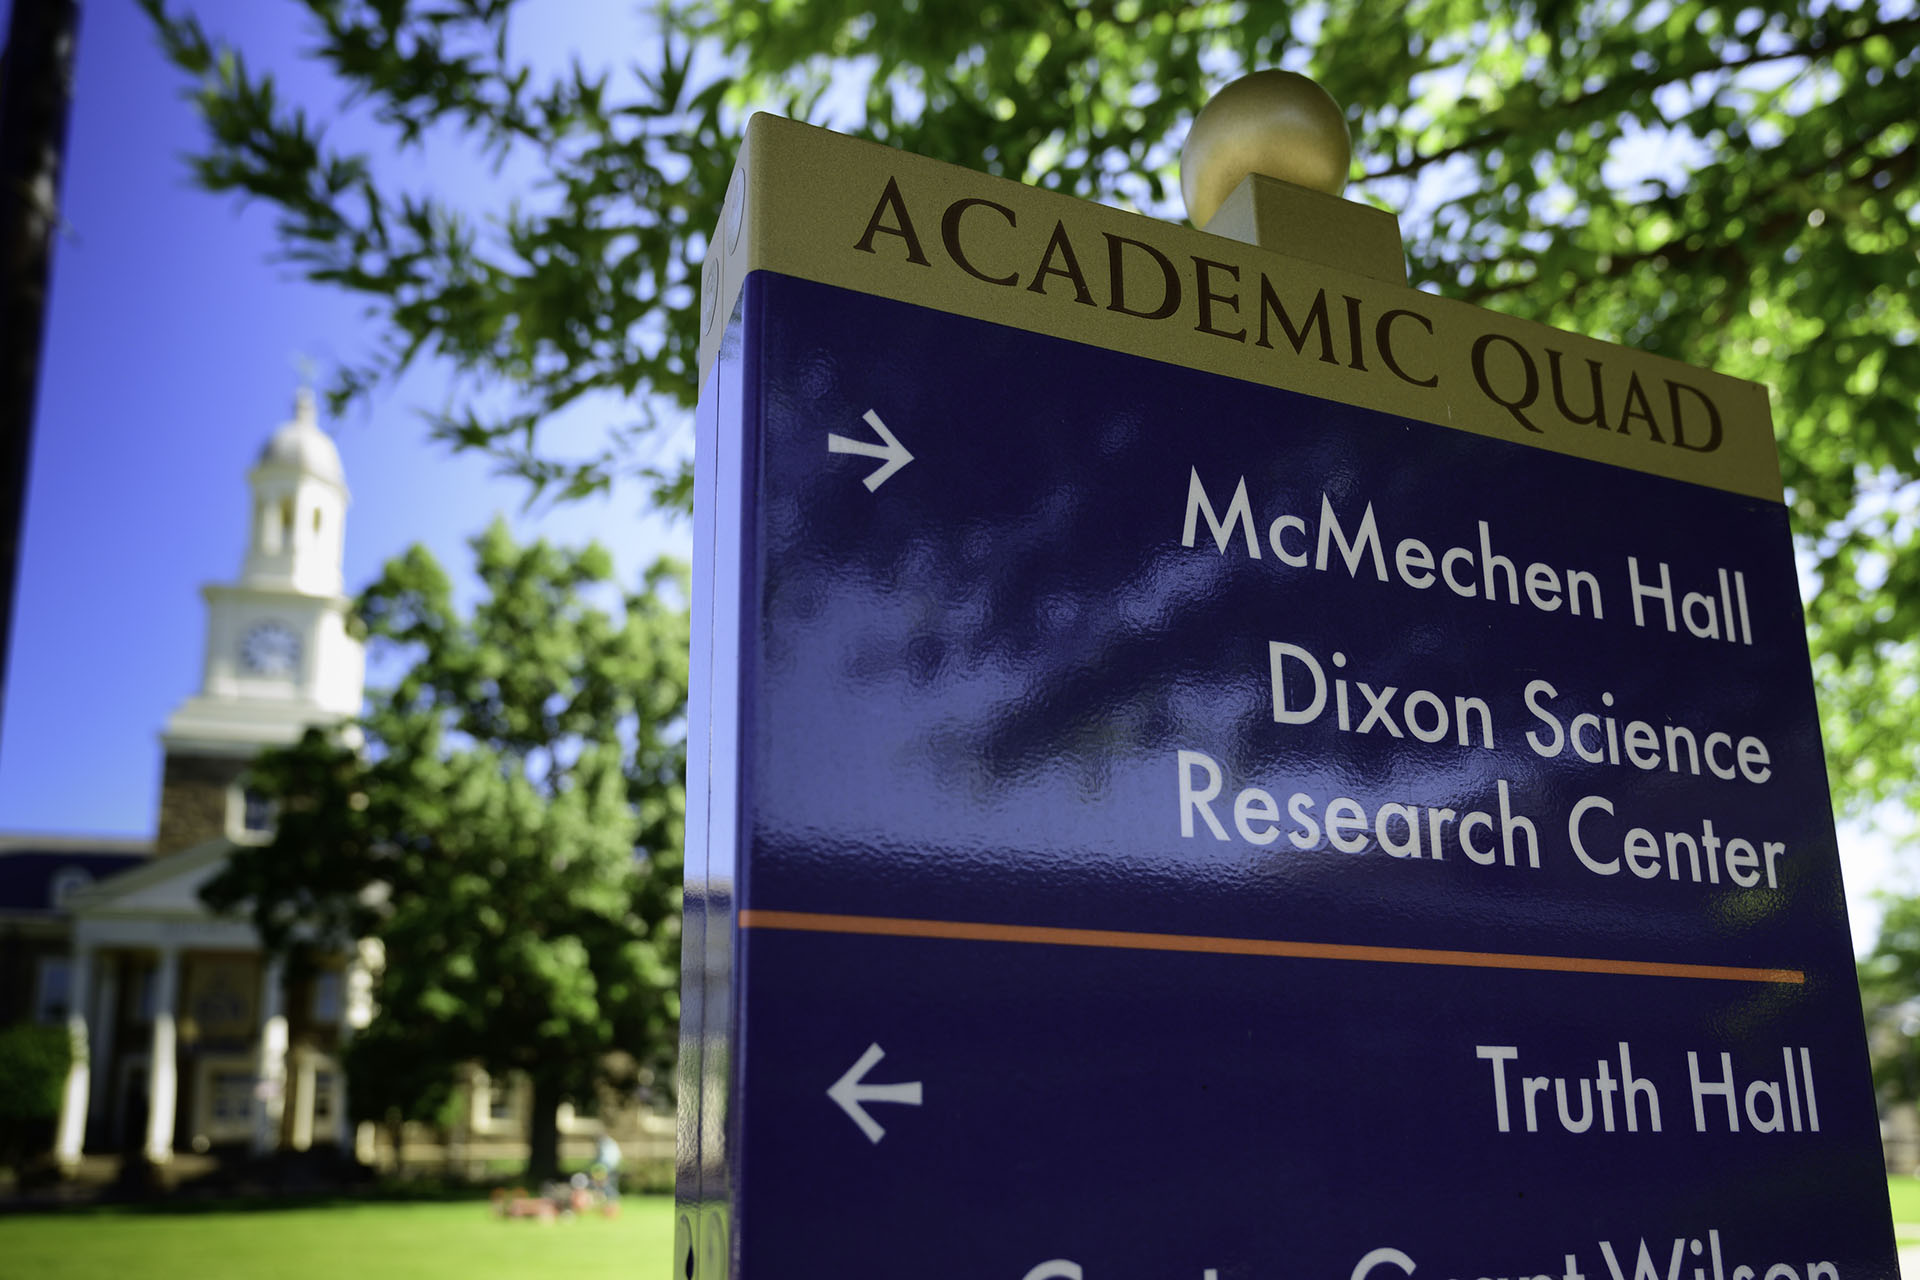 academic quad signage